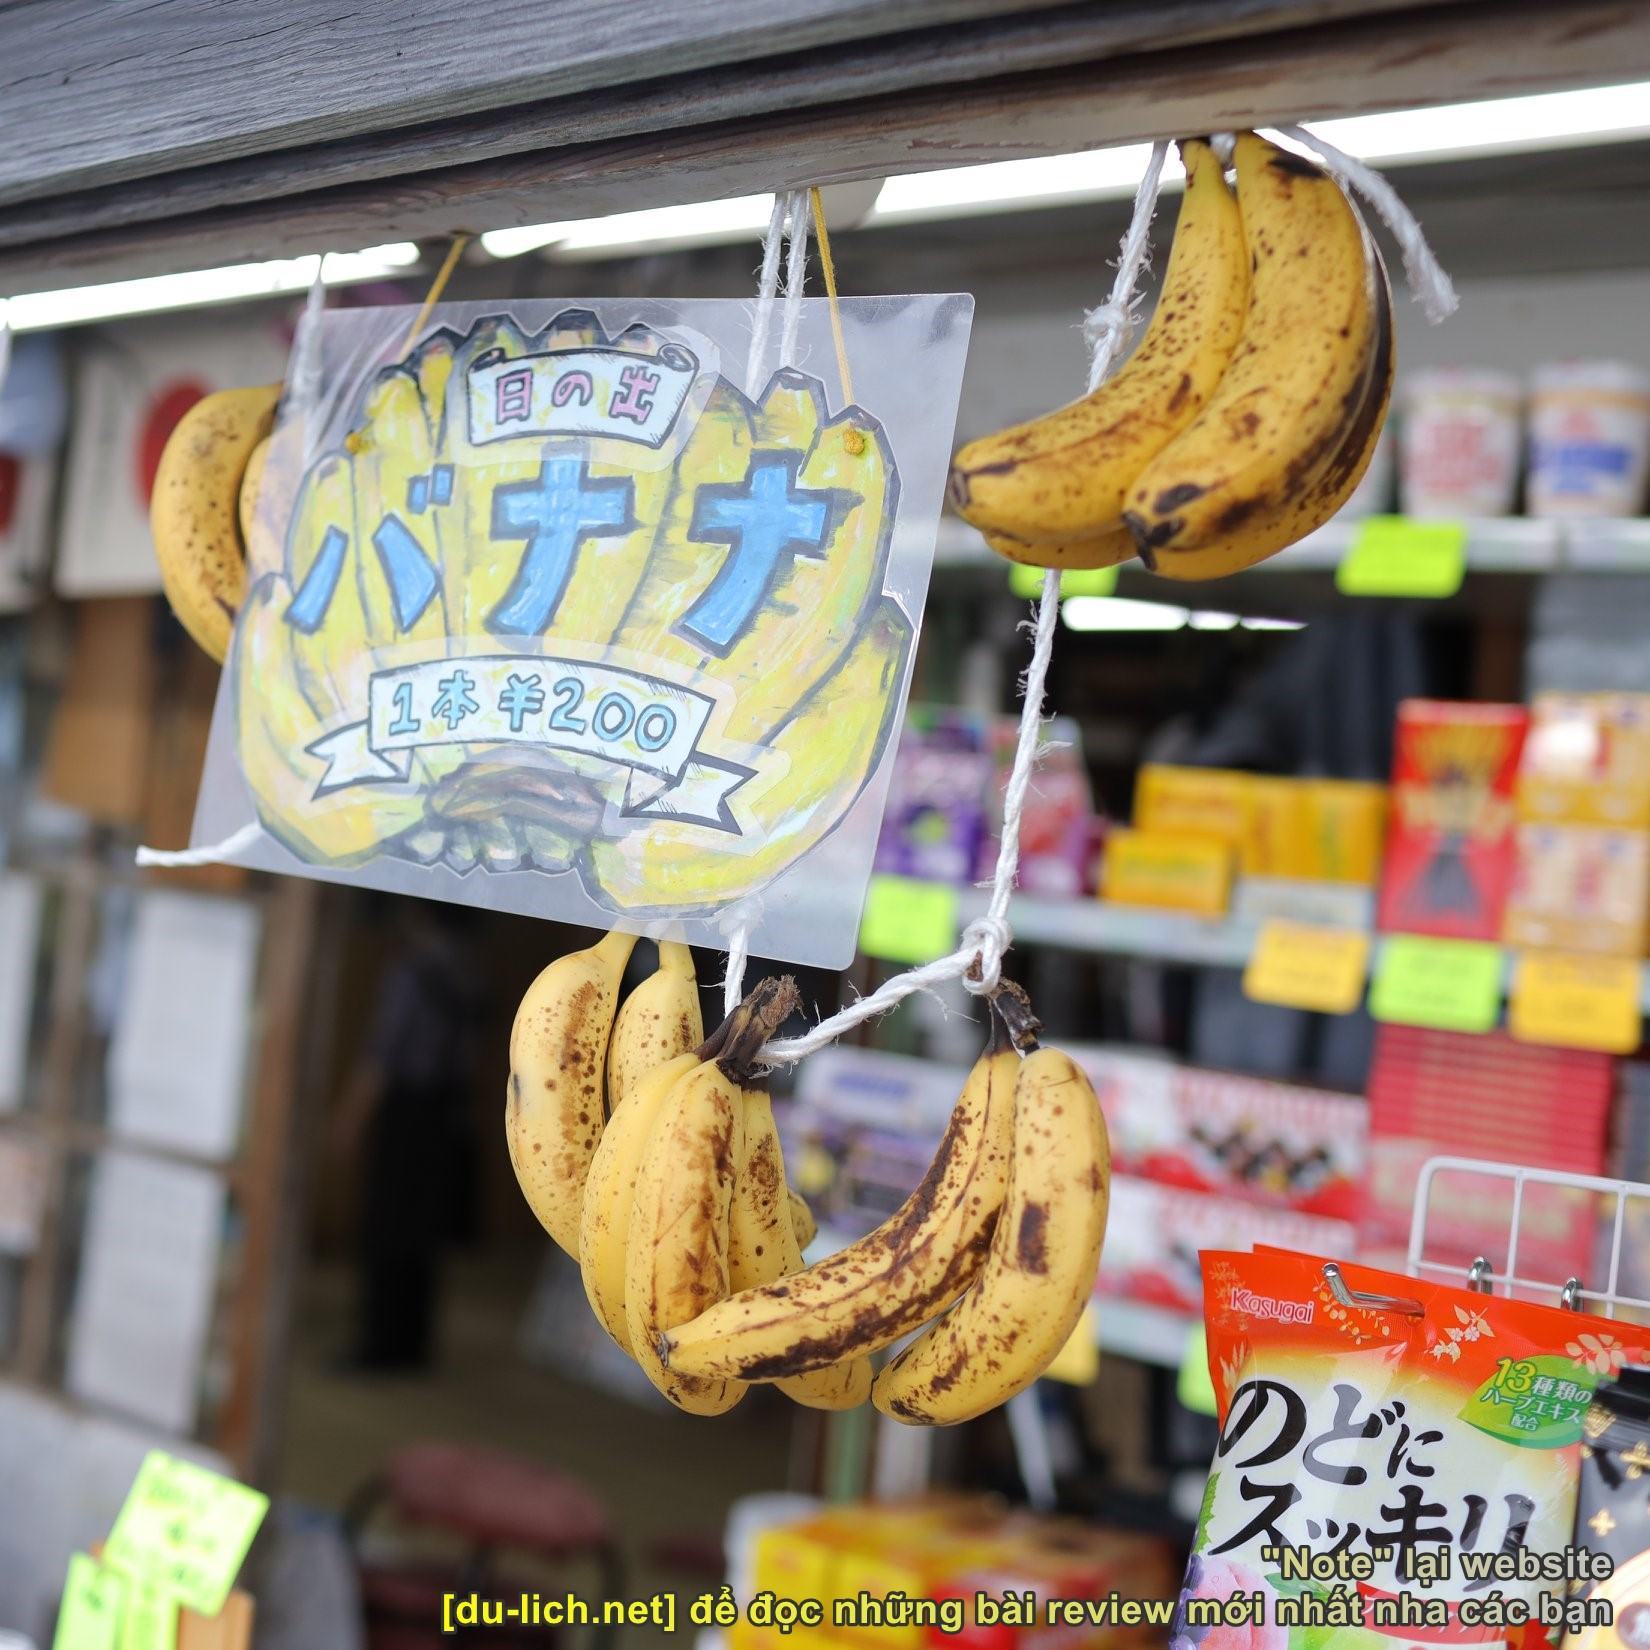 Chuối và nhiều mặt hàng khác được bán tại các tiệm tạp hóa nhỏ ở mỗi tầng lên núi Phú Sĩ